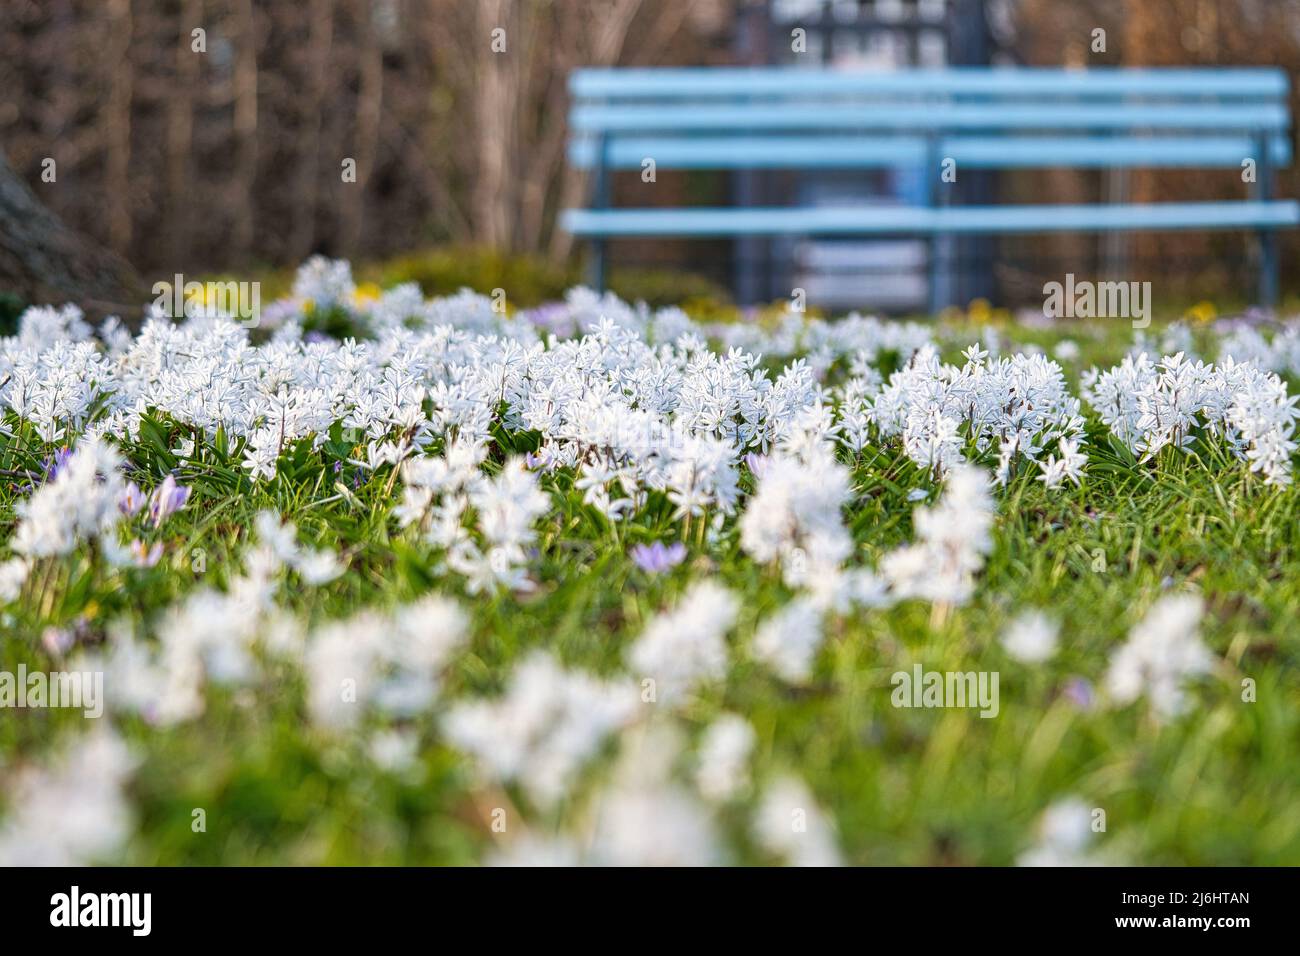 Les hyacinthes étoiles sont les premiers bloomers qui annoncent le printemps. Champ blanc de fleurs dans le parc en face d'un banc. Ils fleurissent à Pâques. La fleur ca Banque D'Images